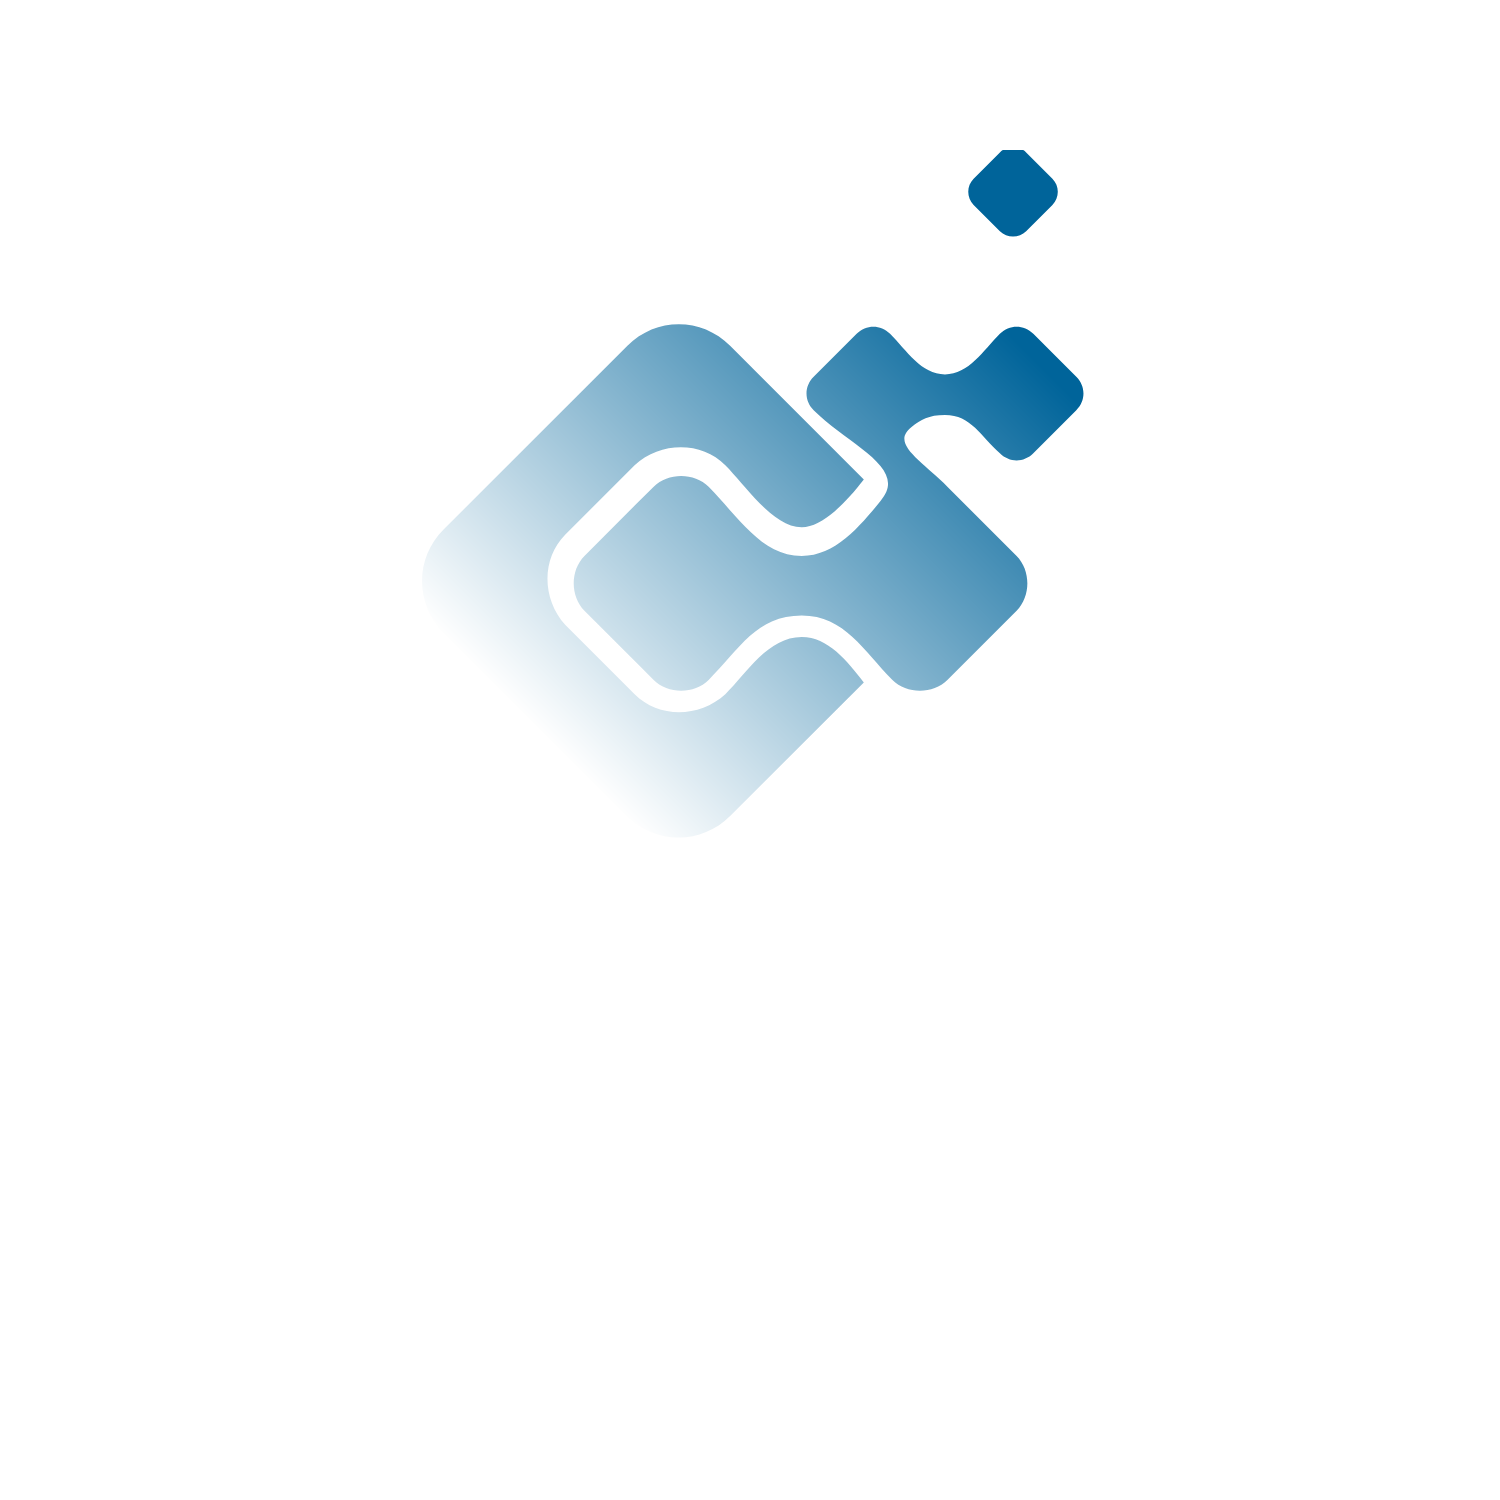 New Horizon Concept